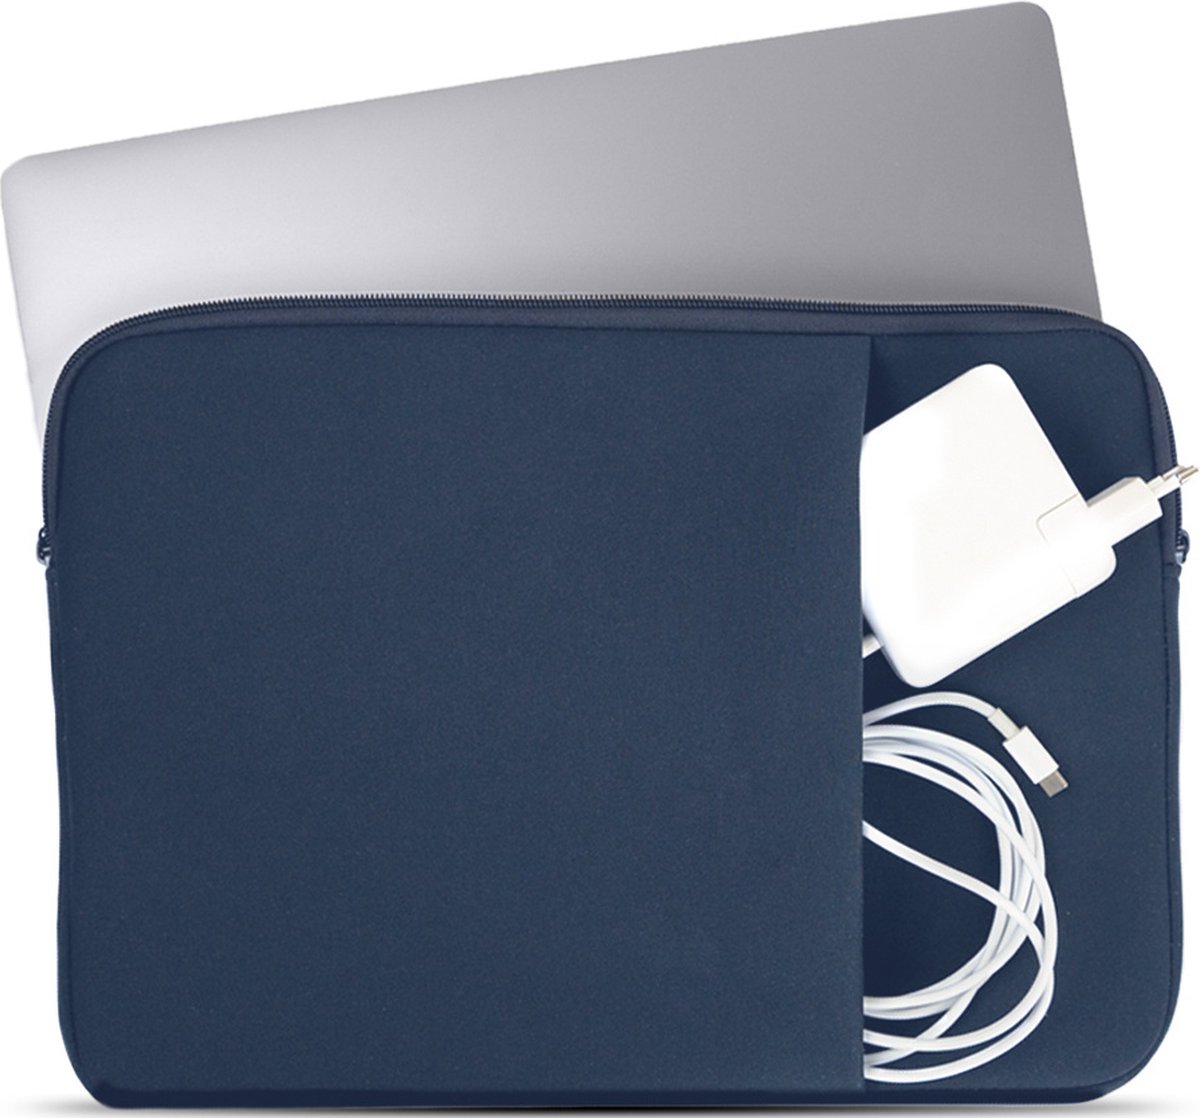 Coverzs Laptophoes 14 inch & 15 6 inch (donkerblauw) - Laptoptas dames / heren geschikt voor o.a. 15 6 inch laptop en 14 Inch laptop - Macbook hoes met ritssluiting - waterafstotende hoes